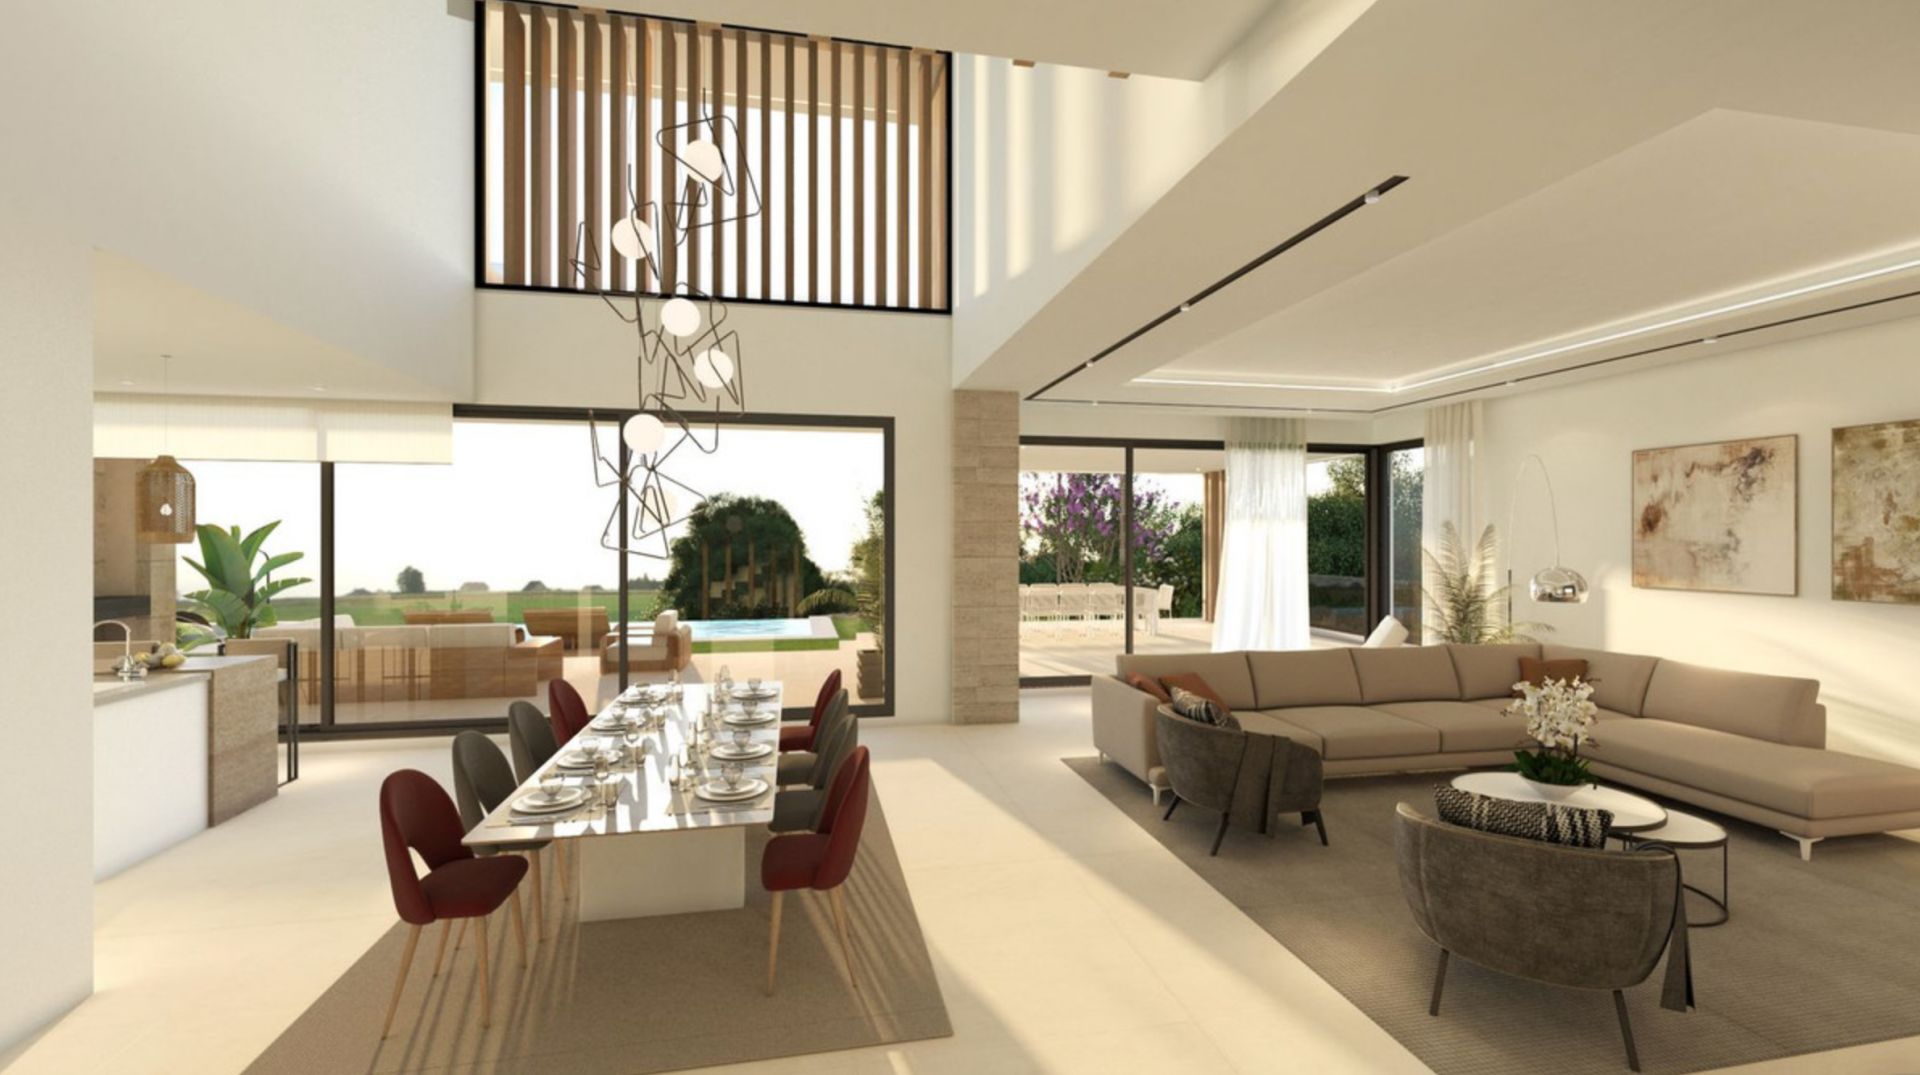 Villa de nueva construcción situada en El Paraíso, una de las zonas residenciales más exclusivas de la Costa del Sol